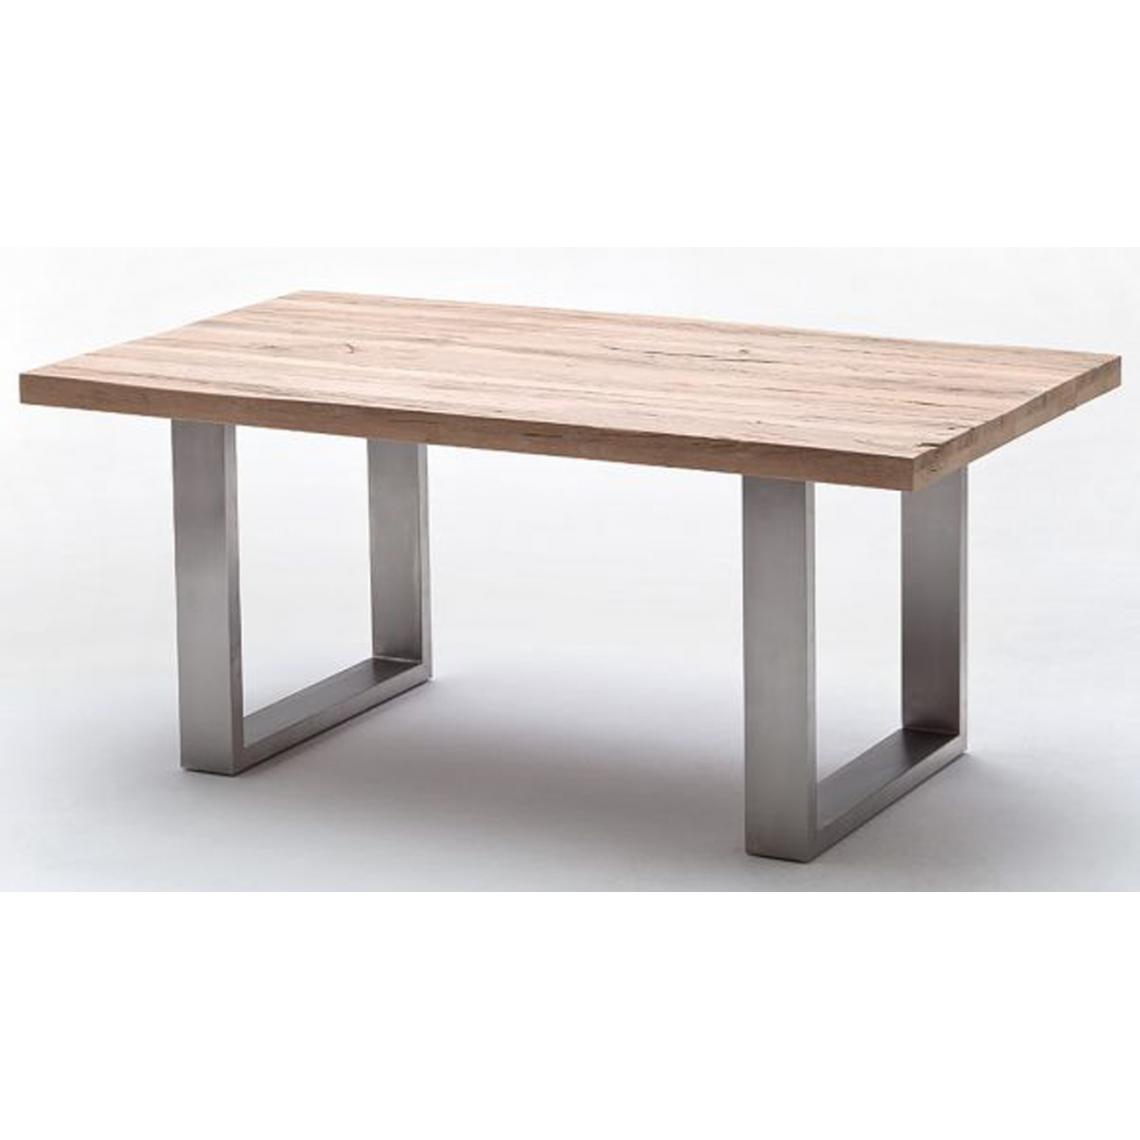 Pegane - Table à manger en chêne chaulé, laqué mat massif - L.240 x H.76 x P.100 cm -PEGANE- - Tables à manger